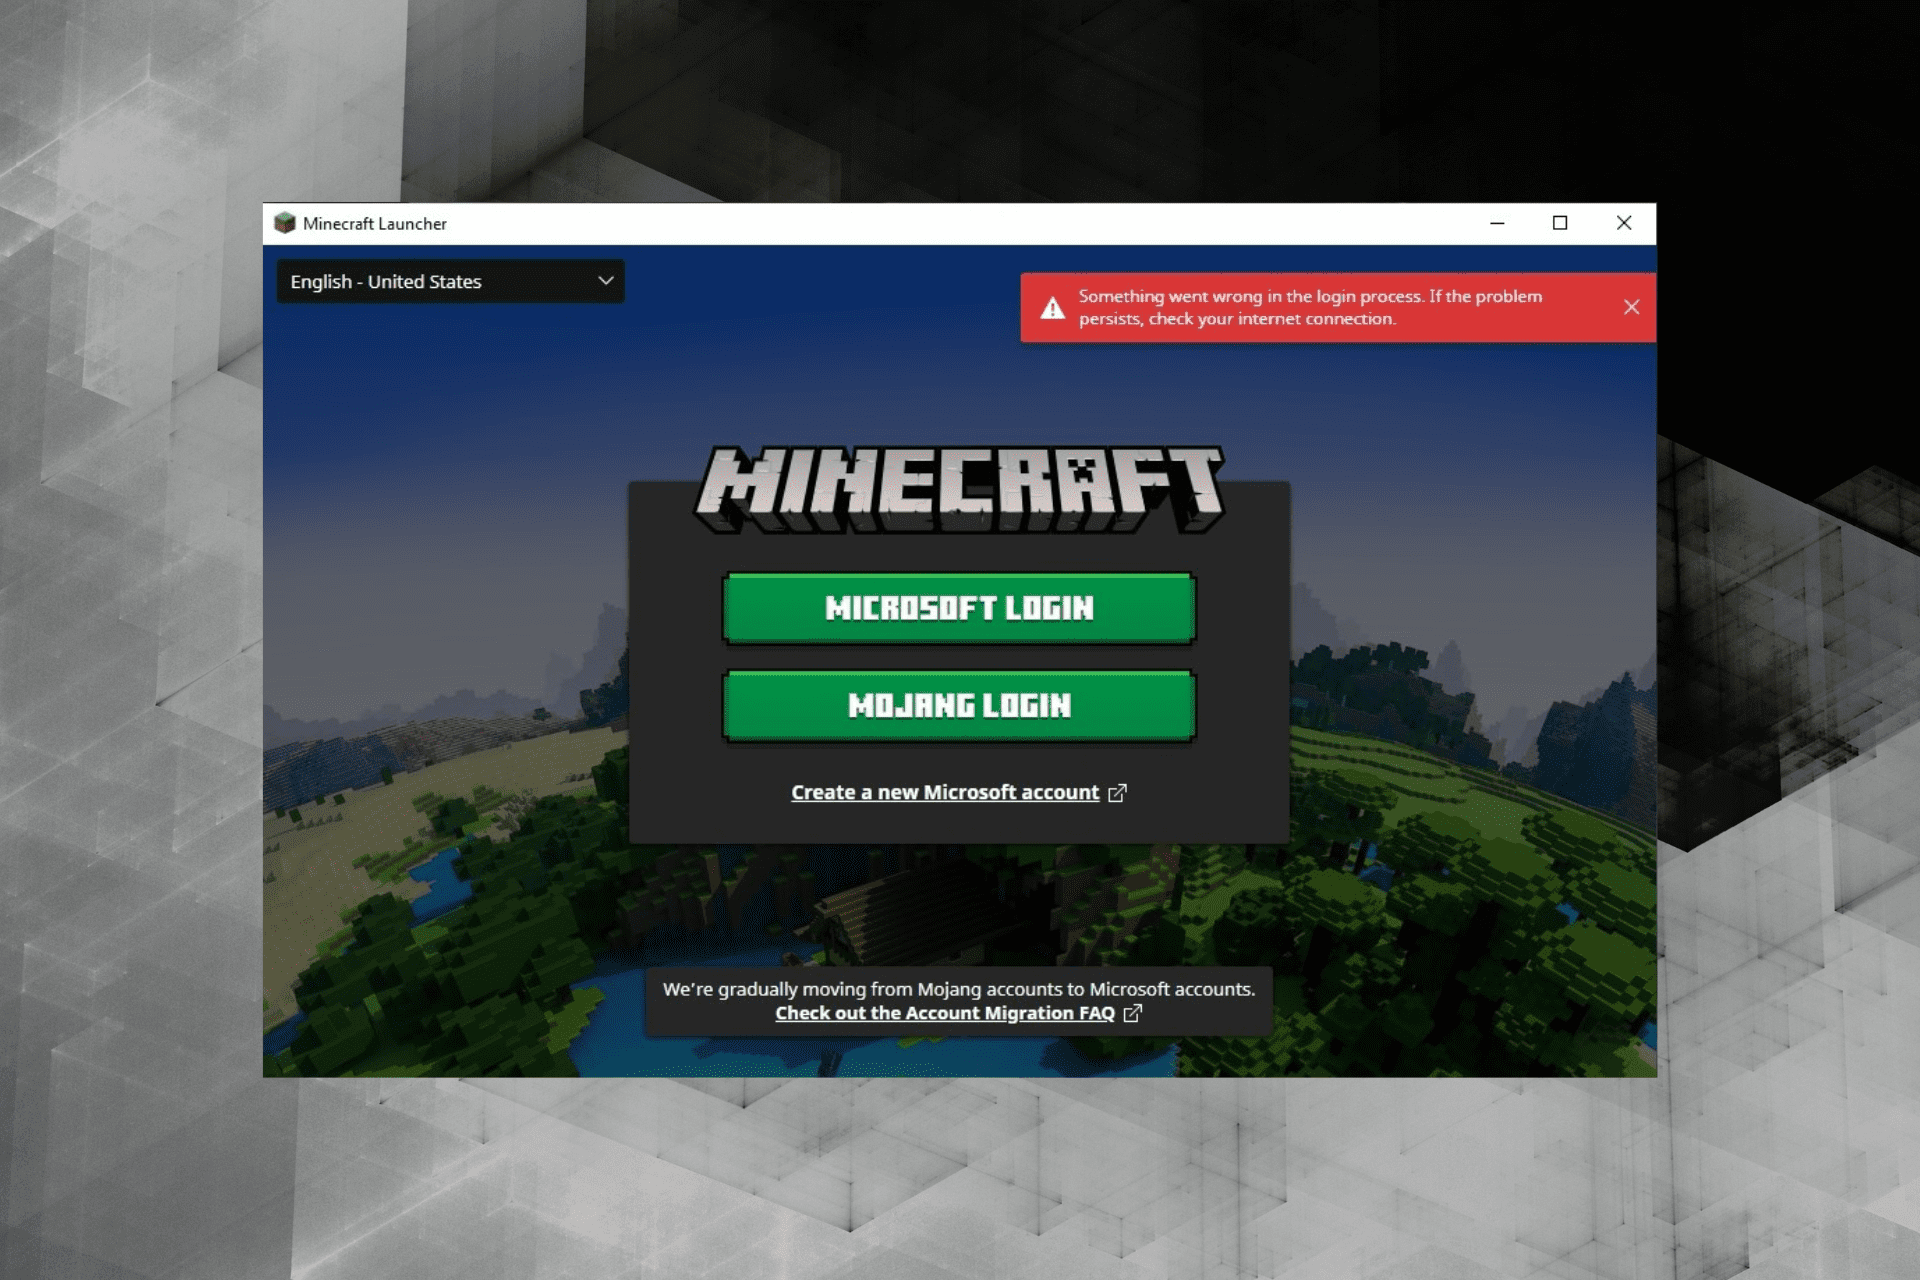 fix no internet connection error in Minecraft launcher